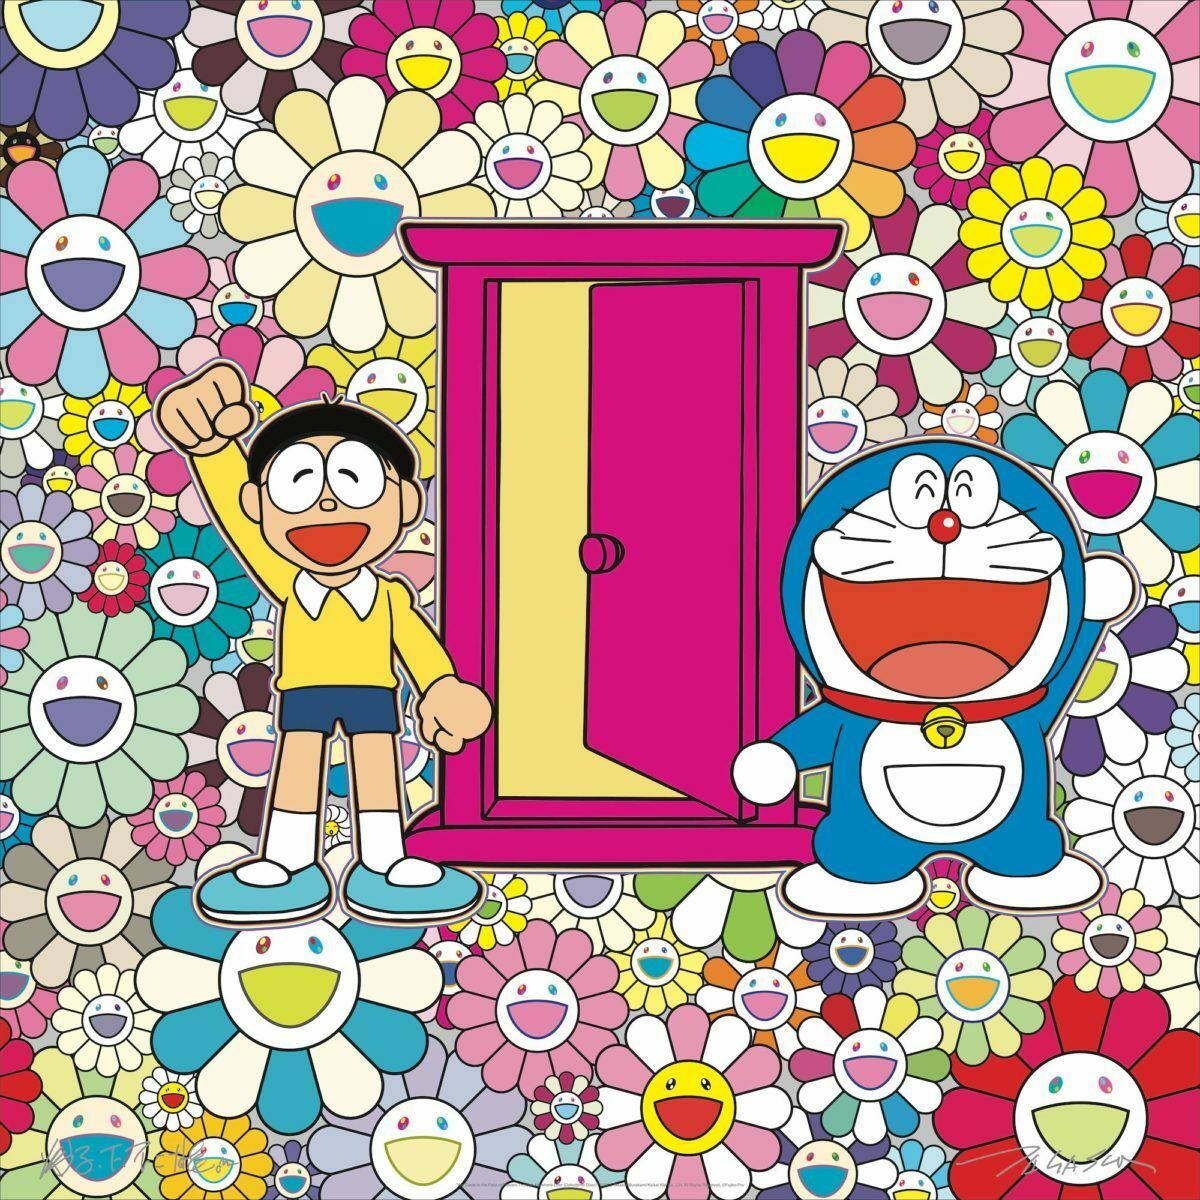 Takashi Murakami Doraemon We Came to the Field of Flowers Through Anywhere door (Dokodemo Door)